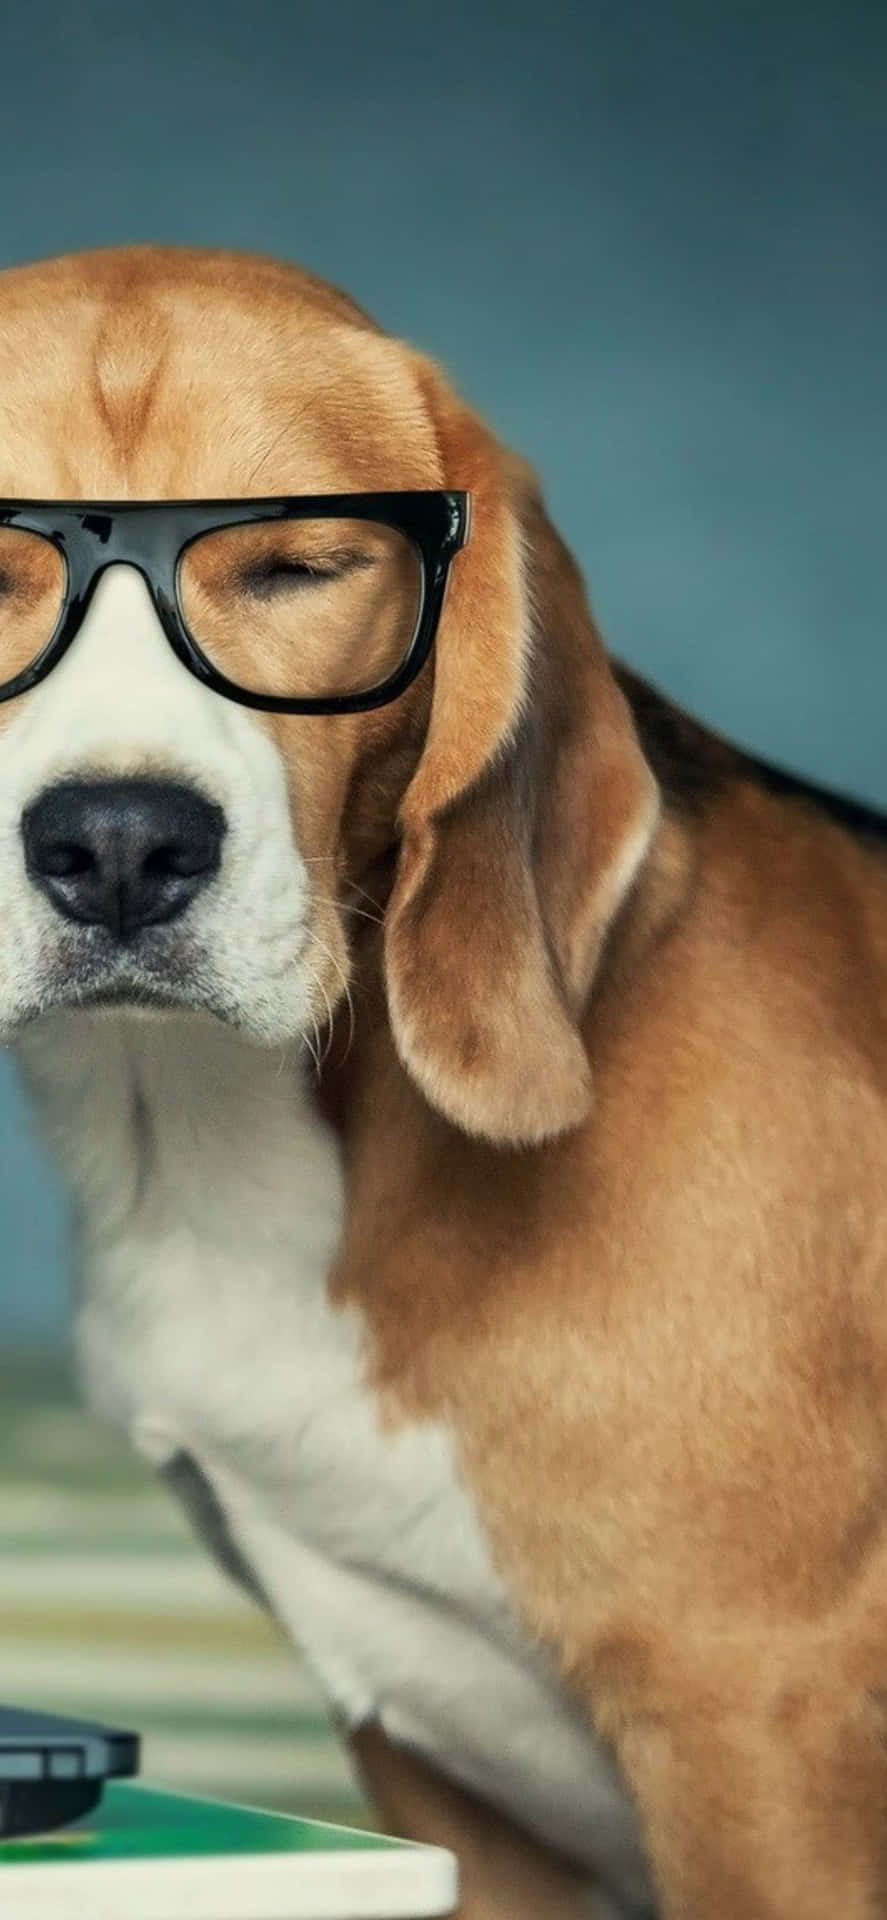 Einhund Trägt Eine Brille Und Sitzt Neben Einem Laptop.